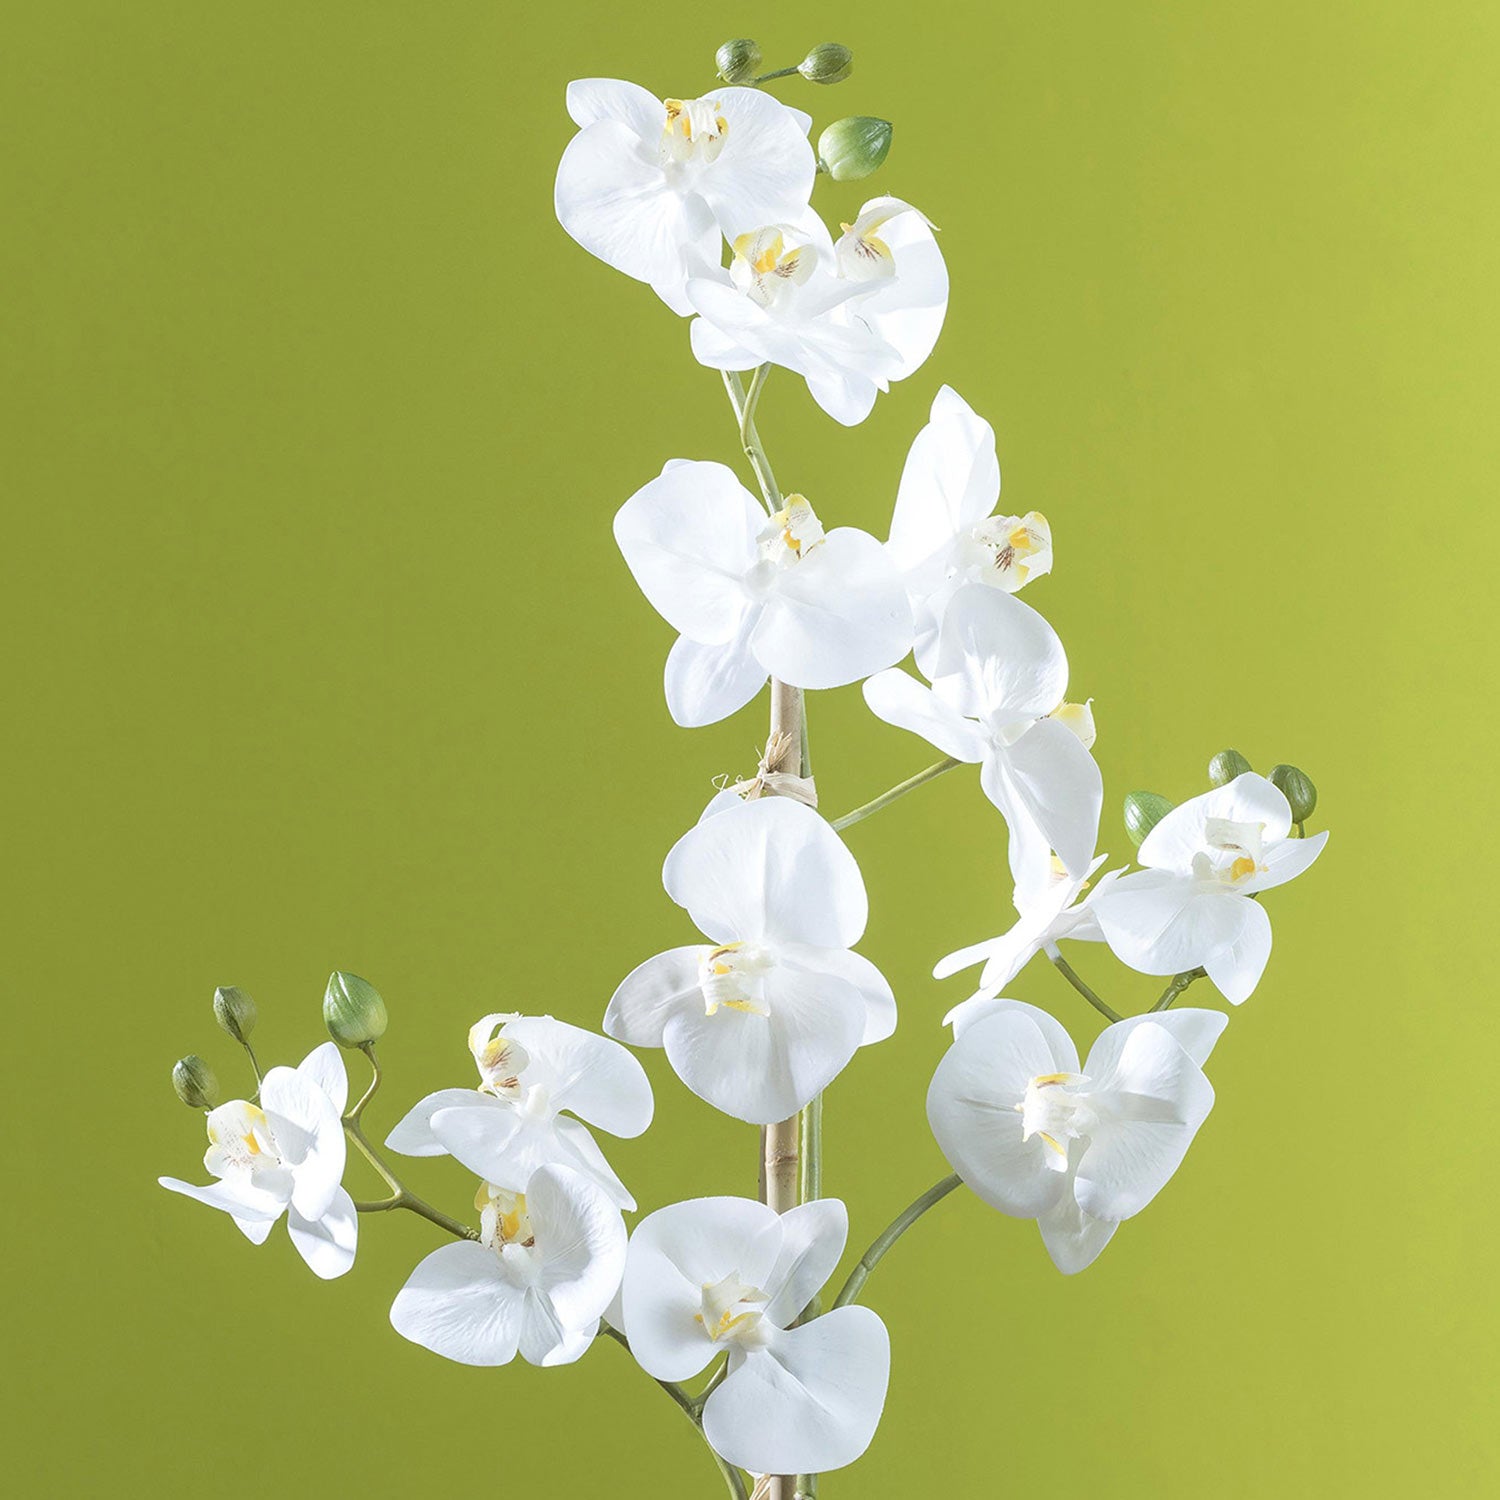 Fehér színű mű orchidea, áttetsző üveg kaspóban.